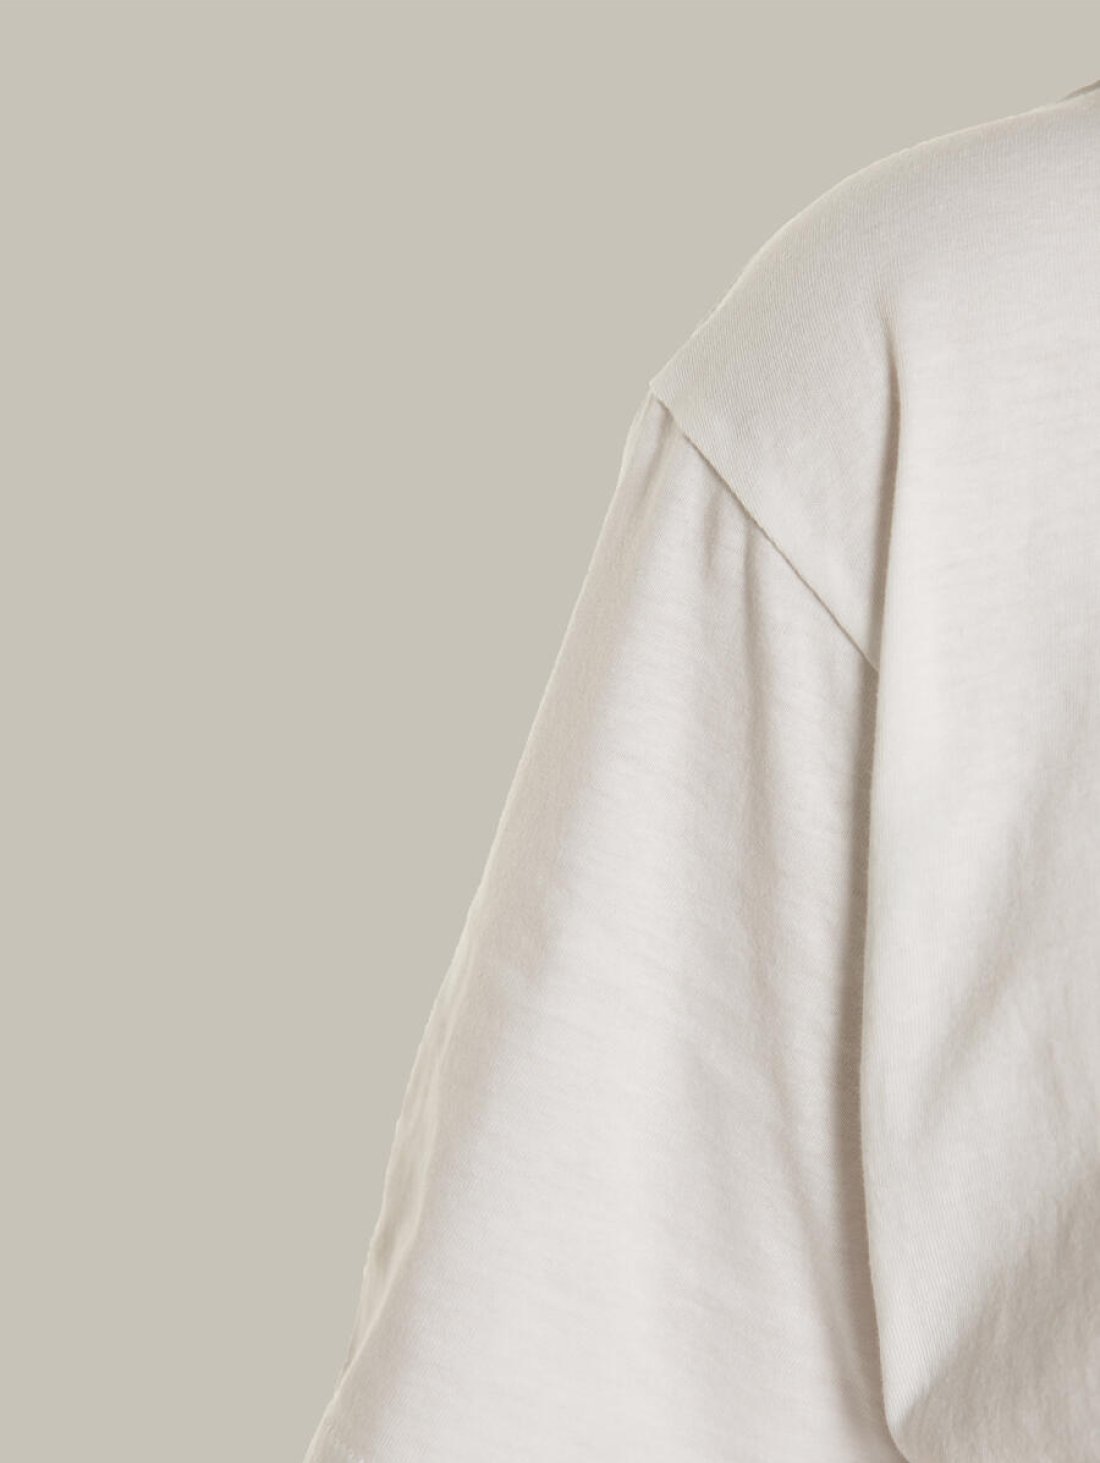 Чоловіча футболка, біла з принтом аватара Hopper 041